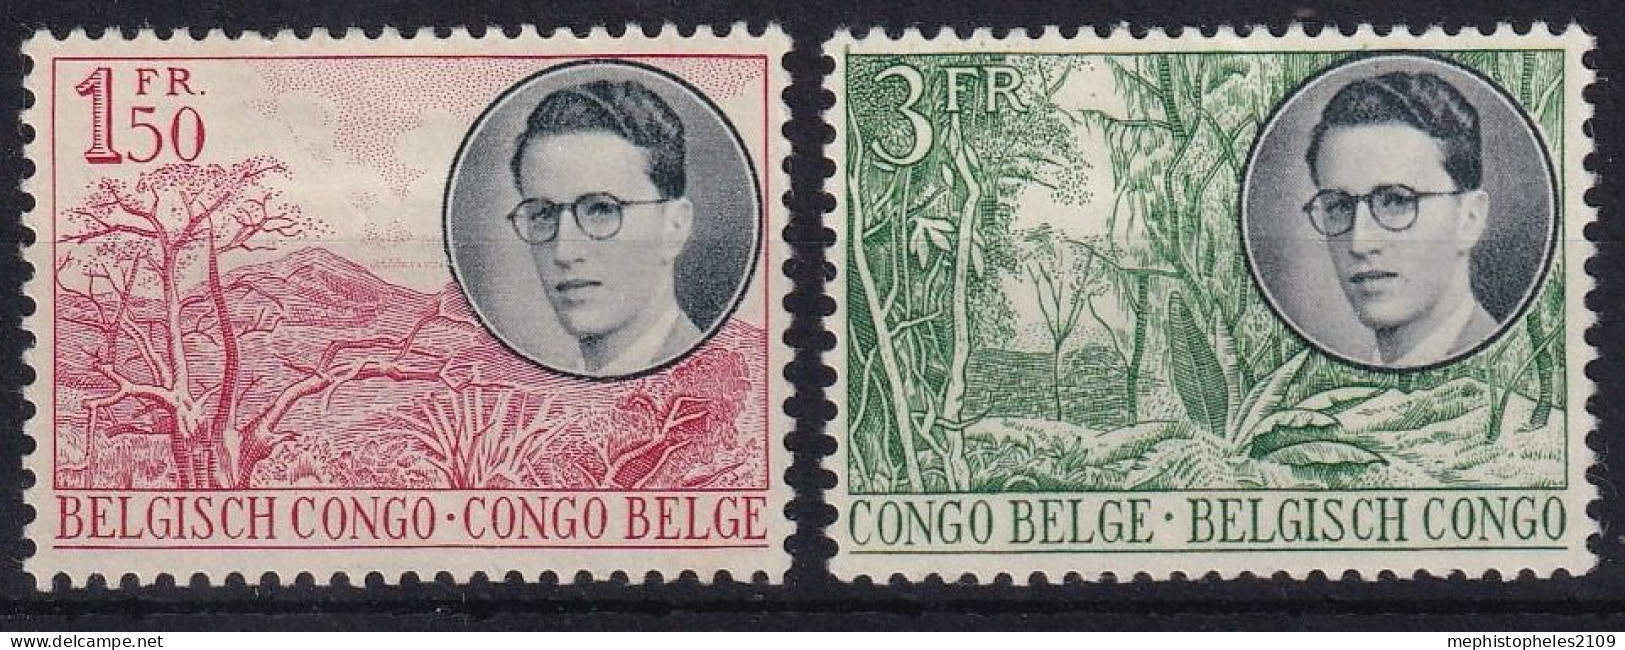 BELGISCH-CONGO 1955 - MLH - Mi 322, 327 - Unused Stamps